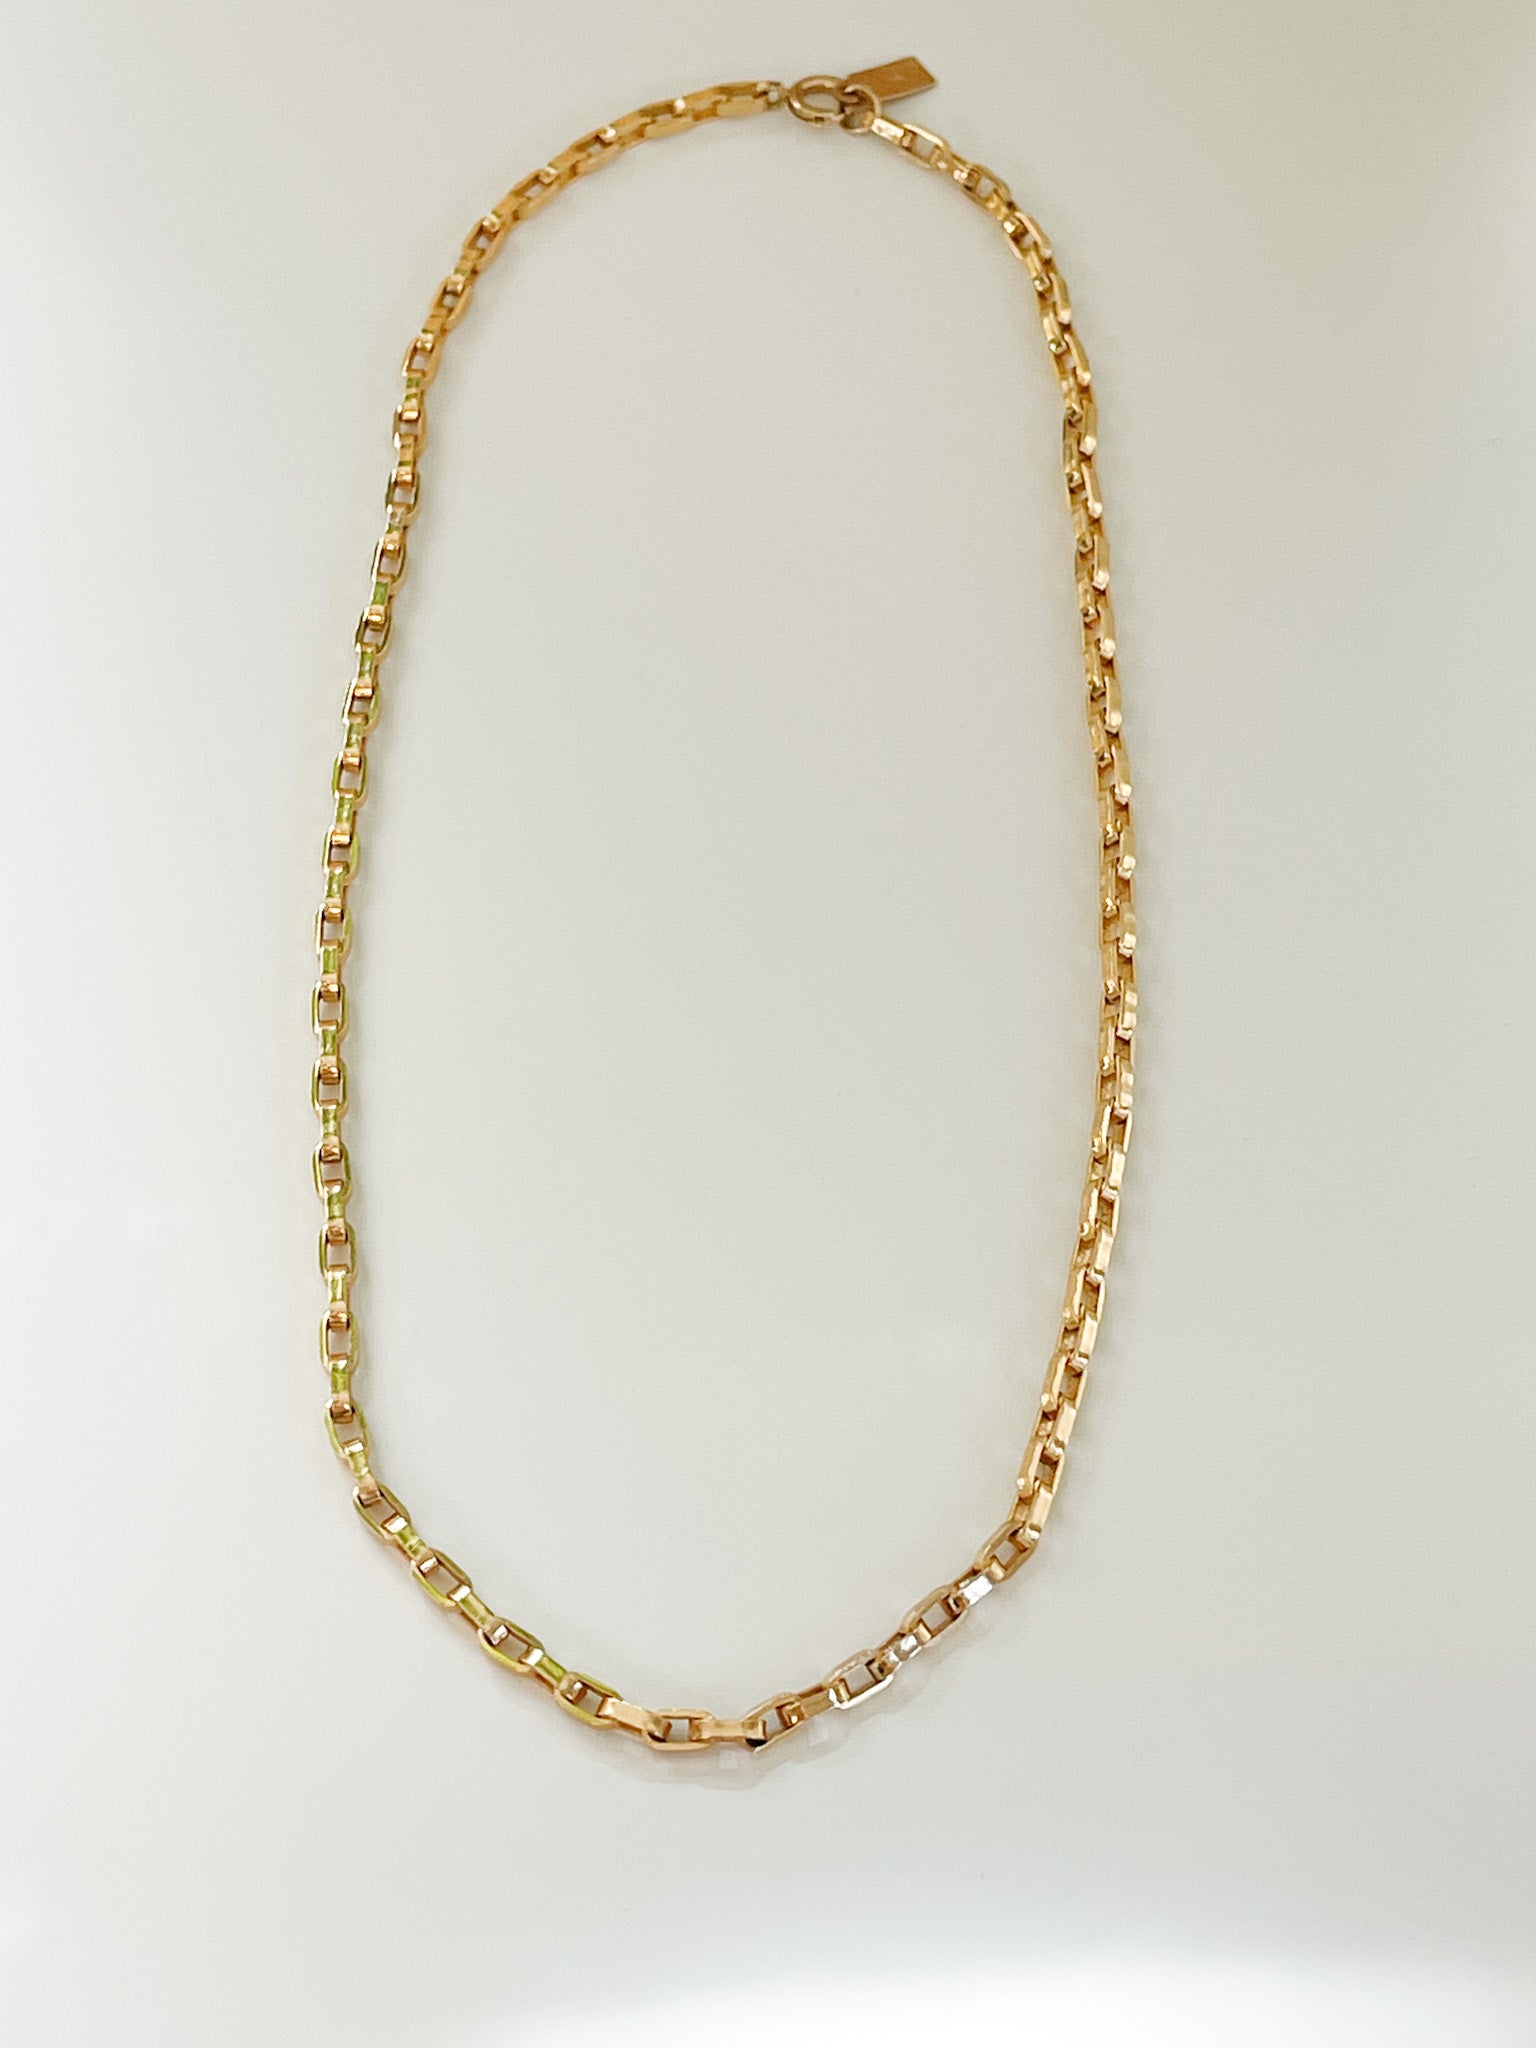 Venecia chain necklace